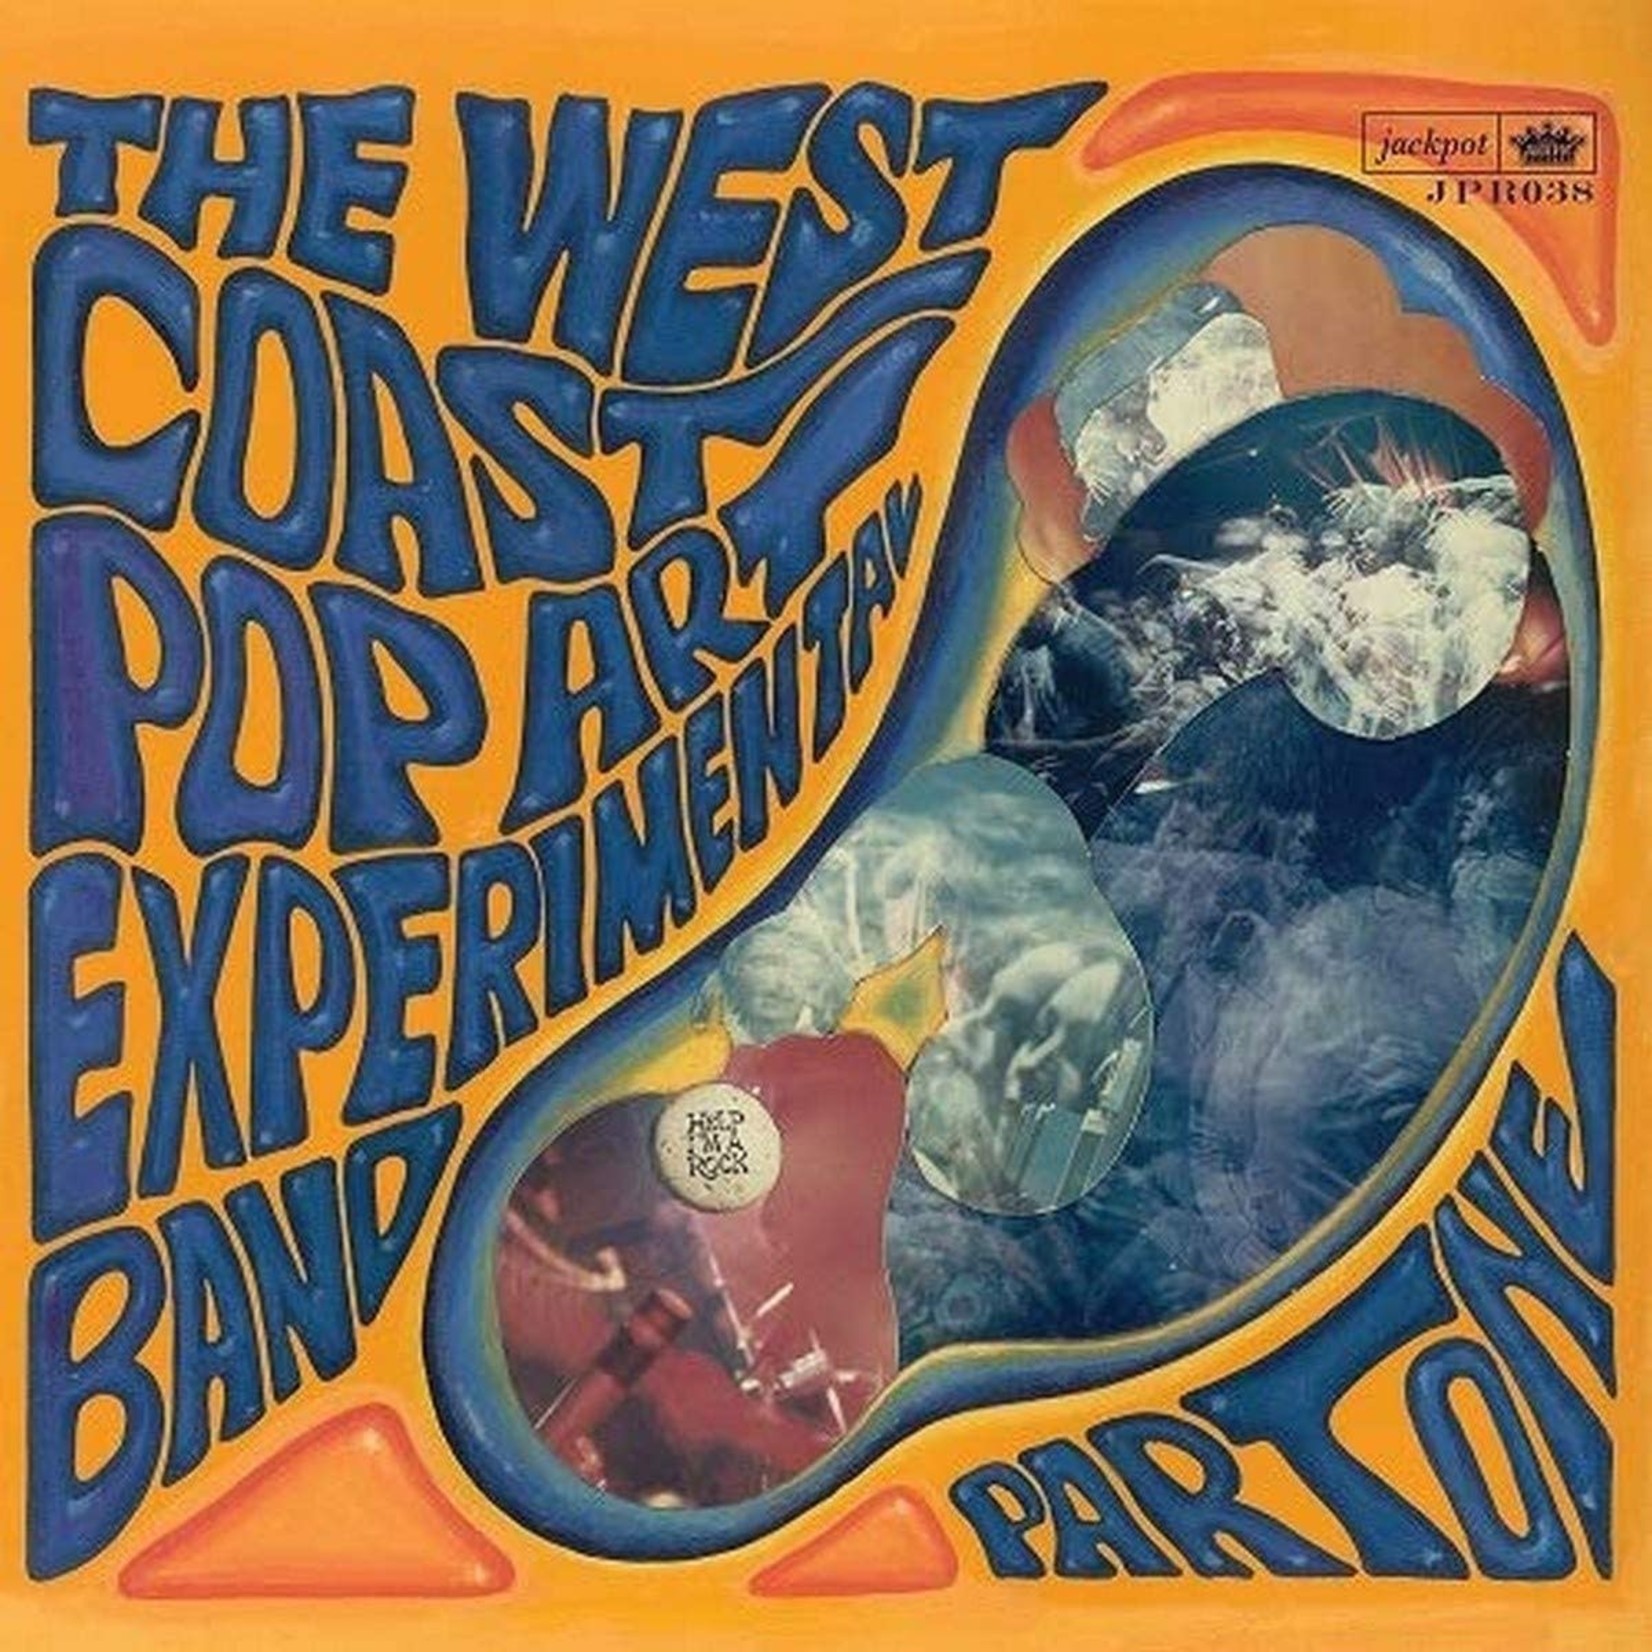 [New] West Coast Pop Art Experimental Band - Part One (mono mix)